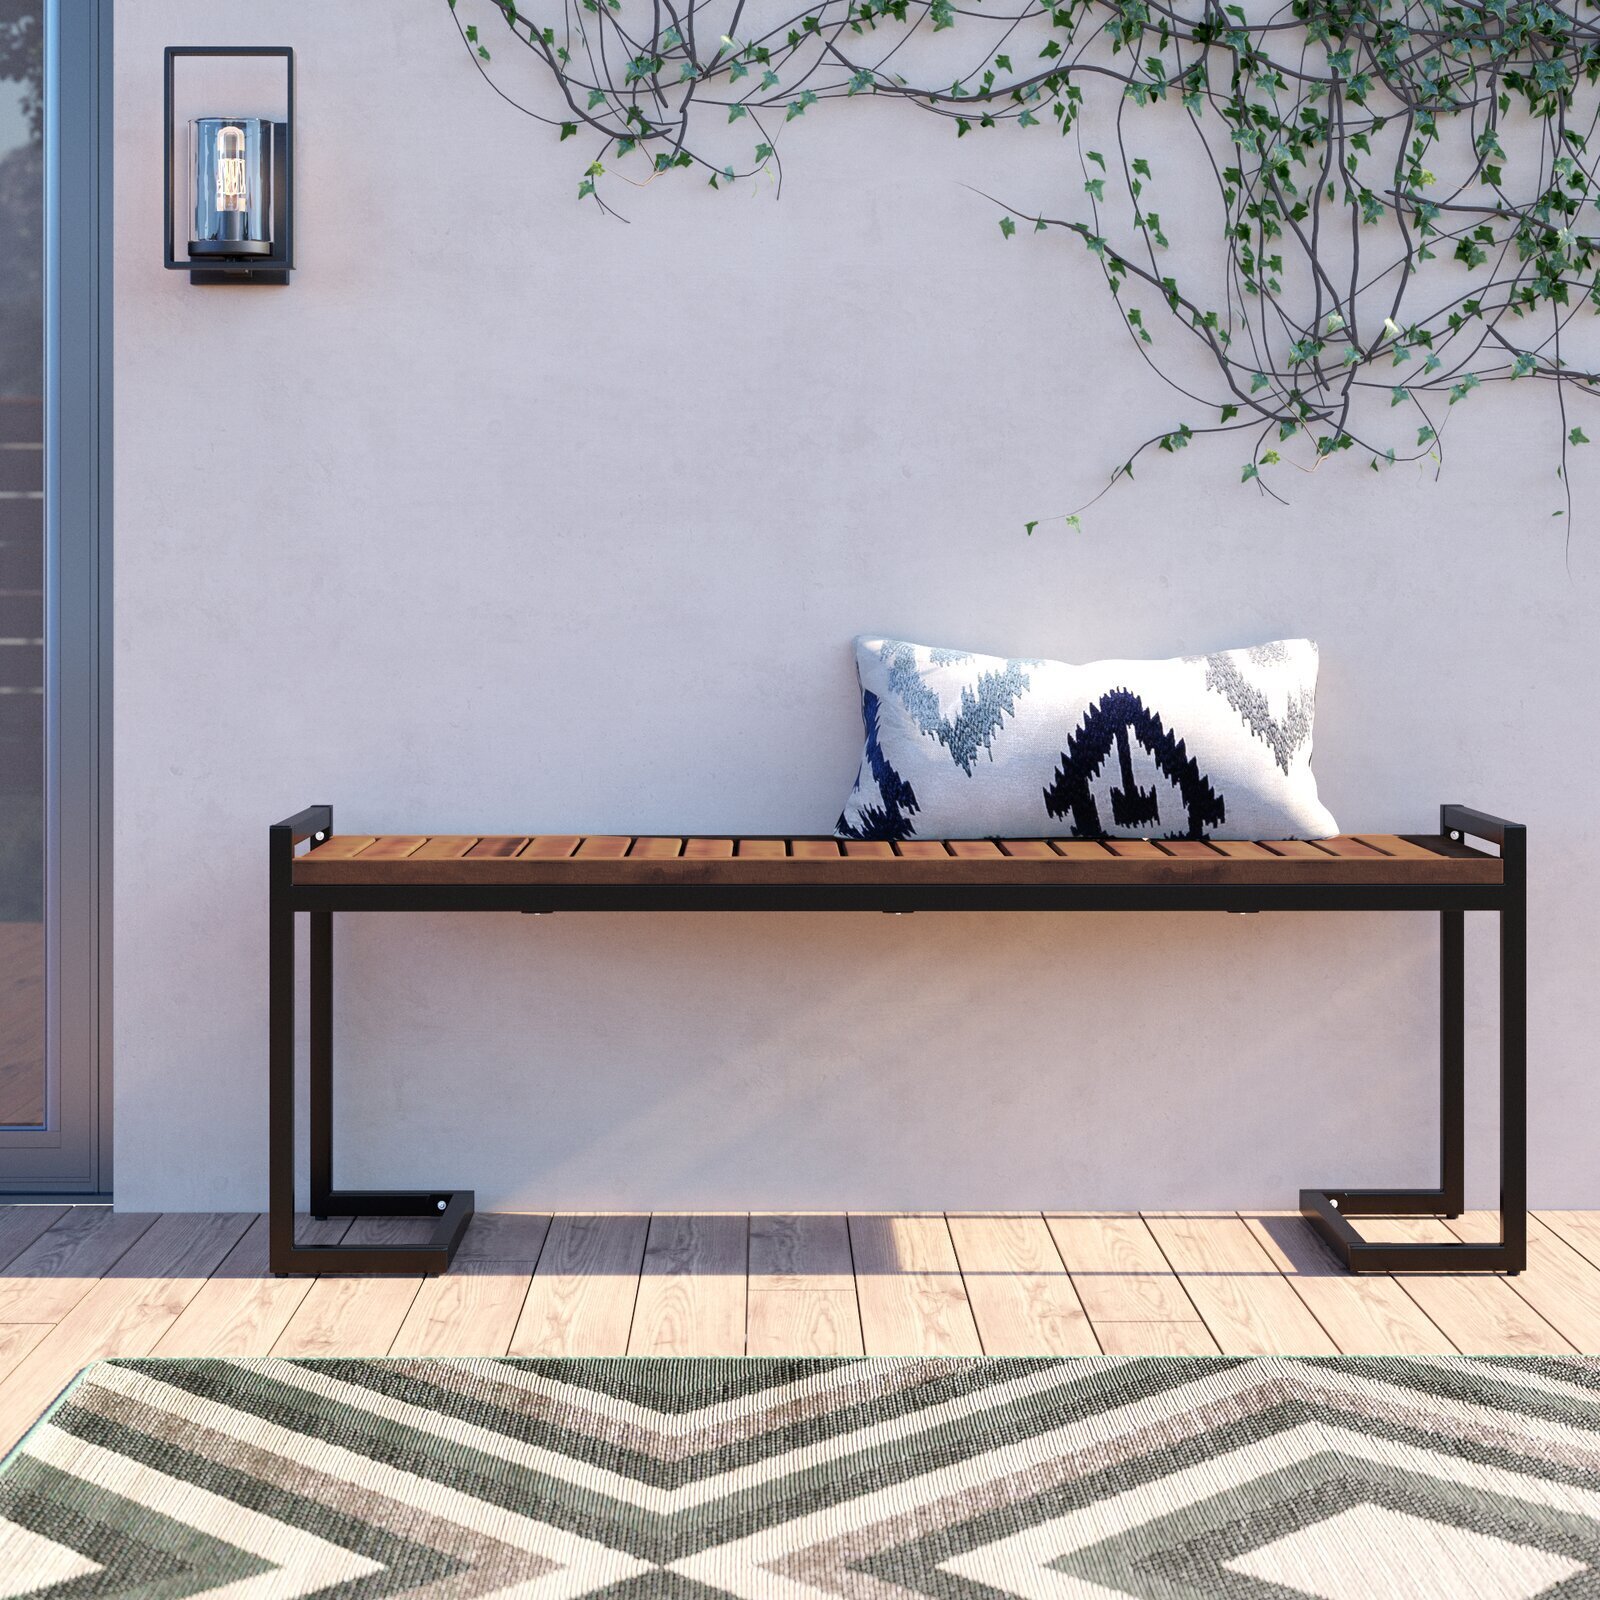 Sleek modern outdoor deck bench